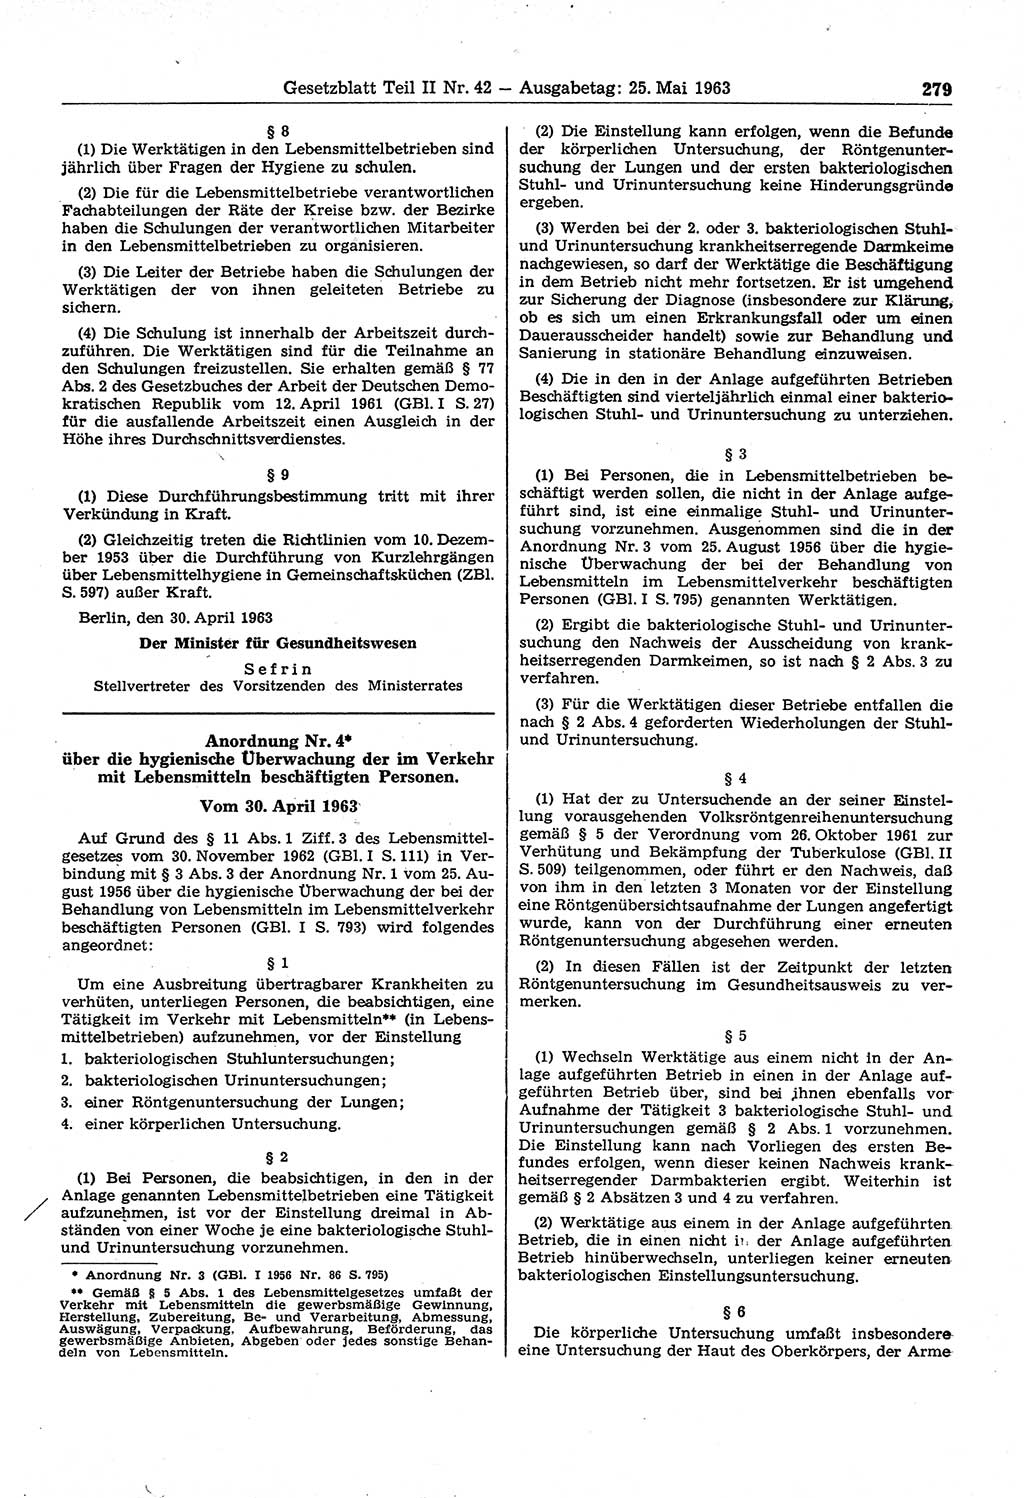 Gesetzblatt (GBl.) der Deutschen Demokratischen Republik (DDR) Teil ⅠⅠ 1963, Seite 279 (GBl. DDR ⅠⅠ 1963, S. 279)